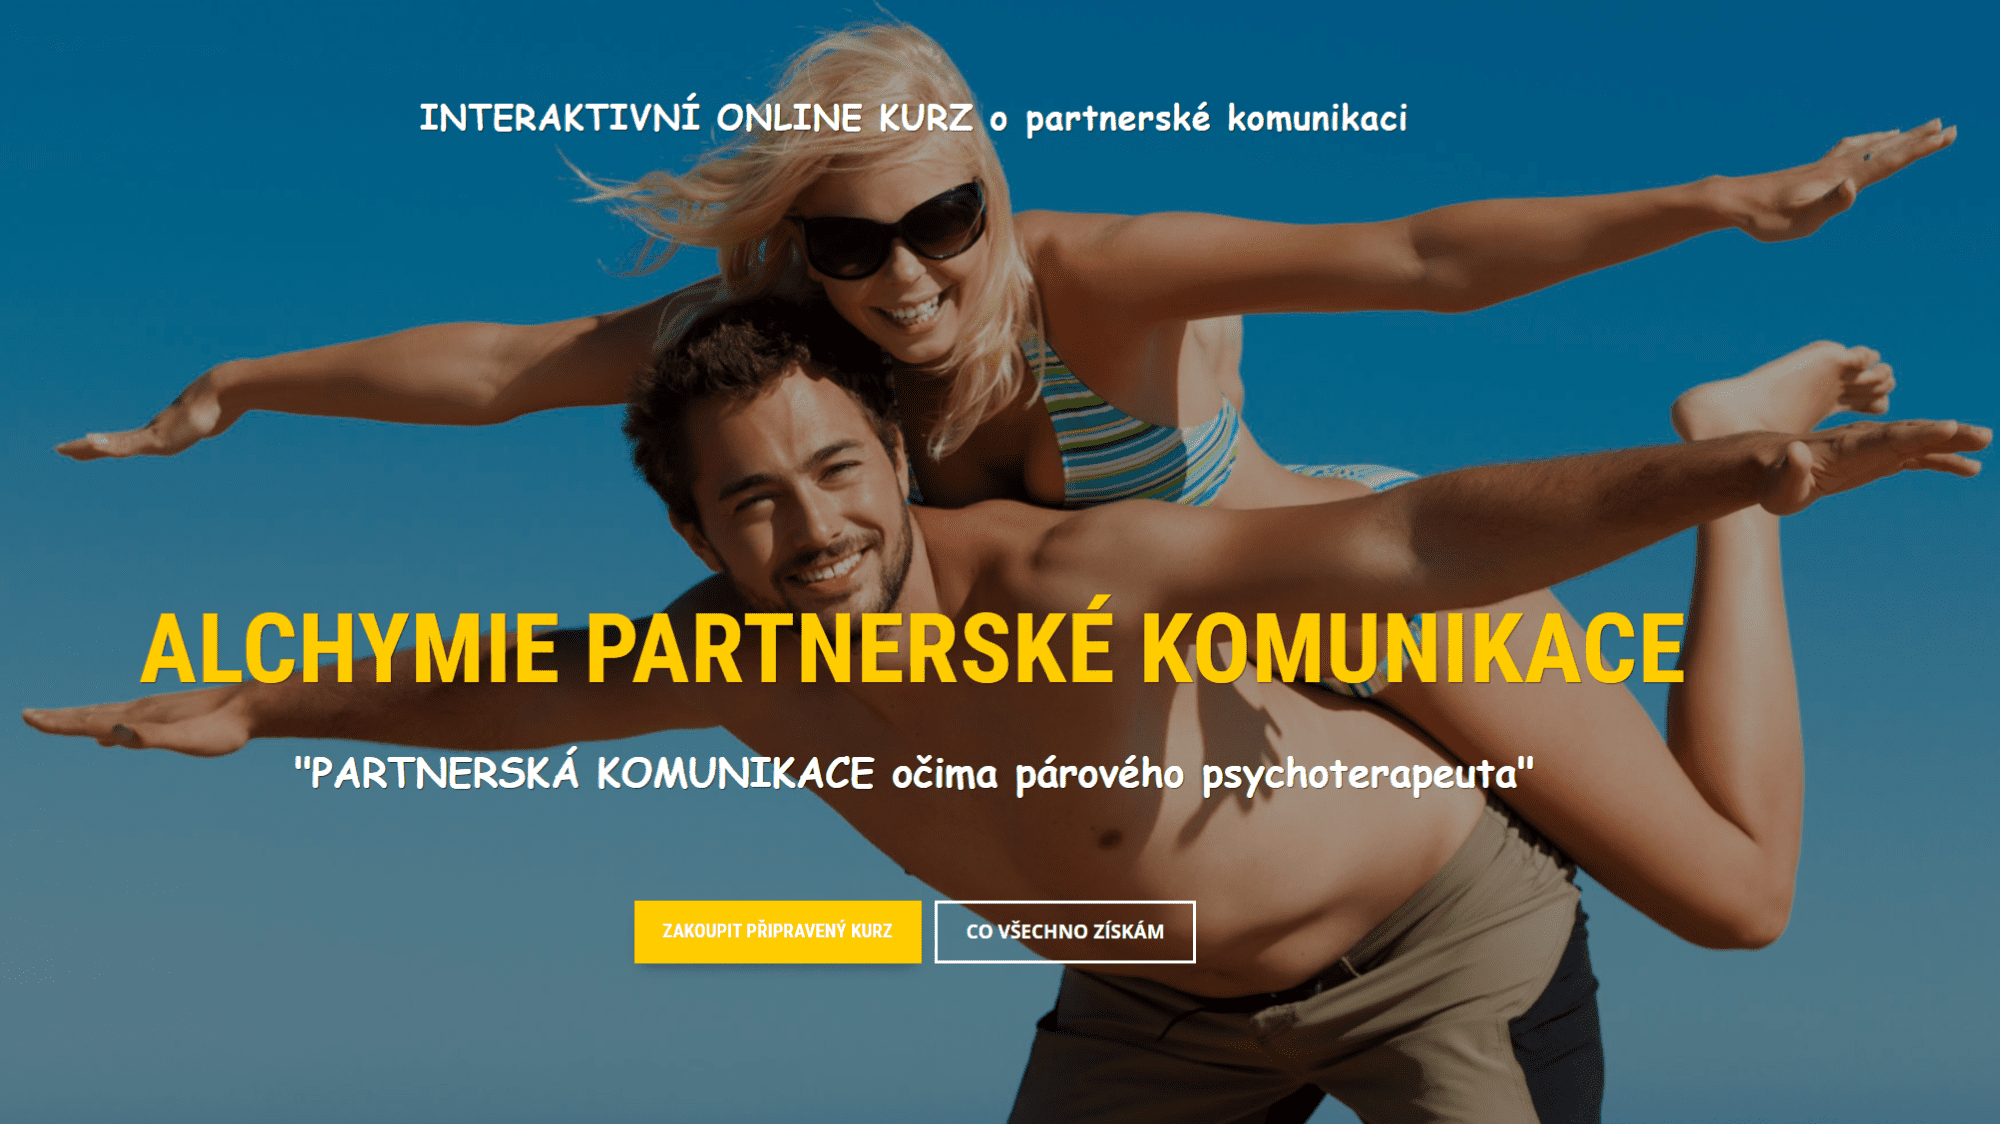 Alchymie partnerské komunikace - ONLINE KURZ PARTNERSKÁ KOMUNIKACE